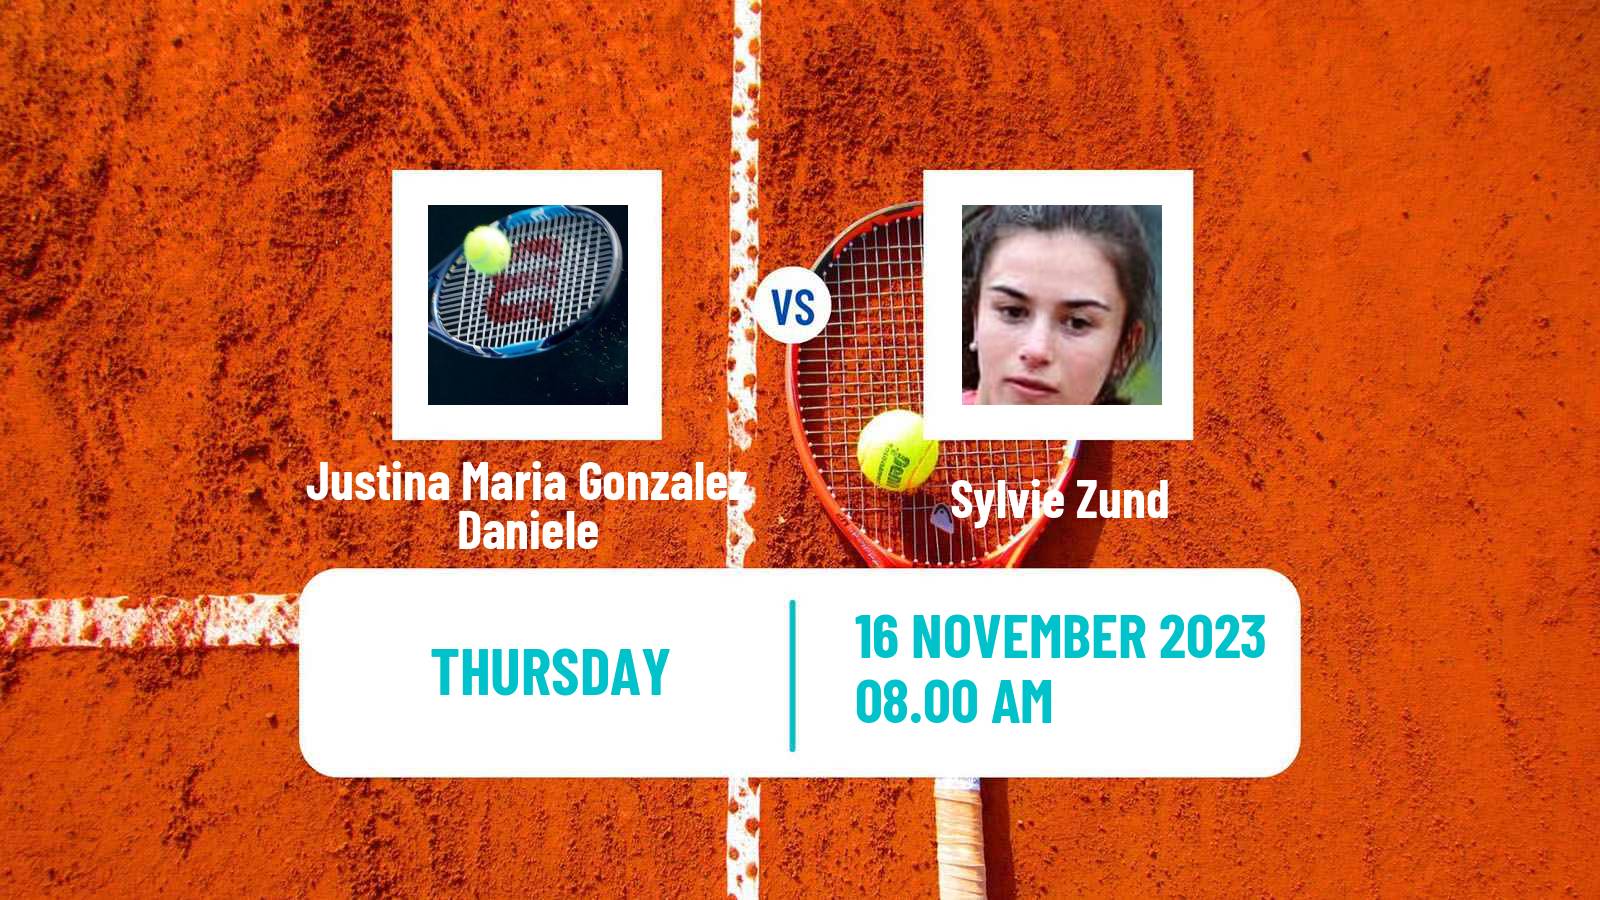 Tennis ITF W15 Buenos Aires 2 Women Justina Maria Gonzalez Daniele - Sylvie Zund